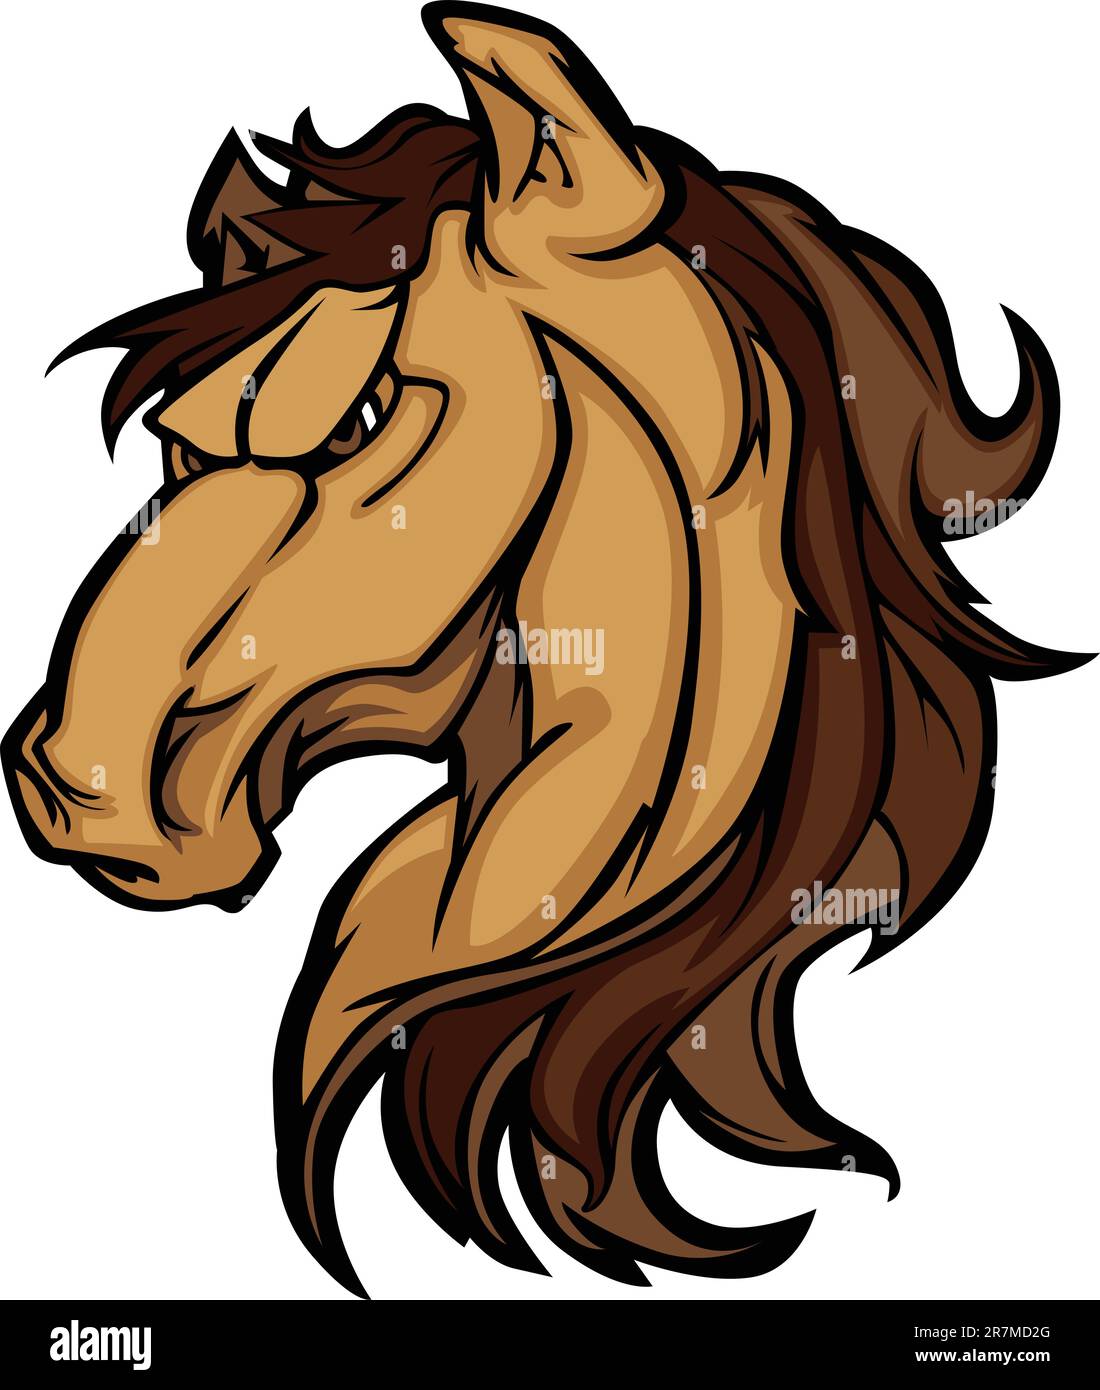 Cartoon Mascot Icon of a Mustang Bronco Horse Stock Vector